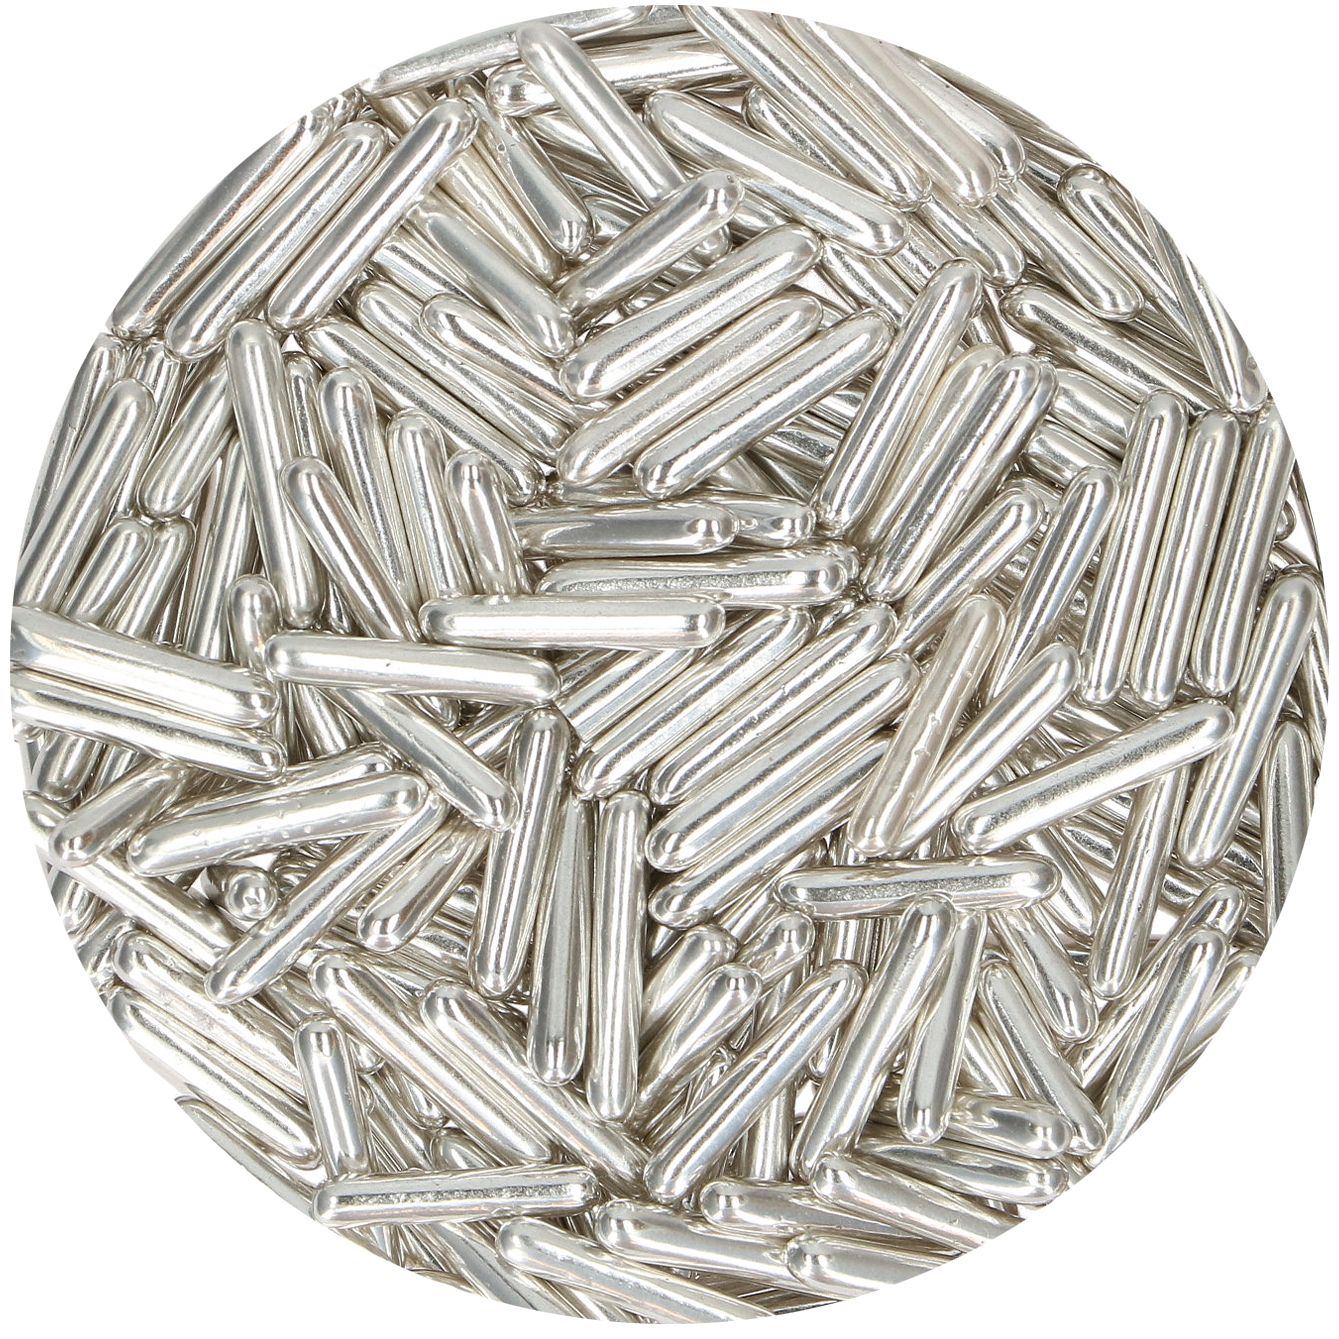 Strössel i form av silver metallic sockerstavar